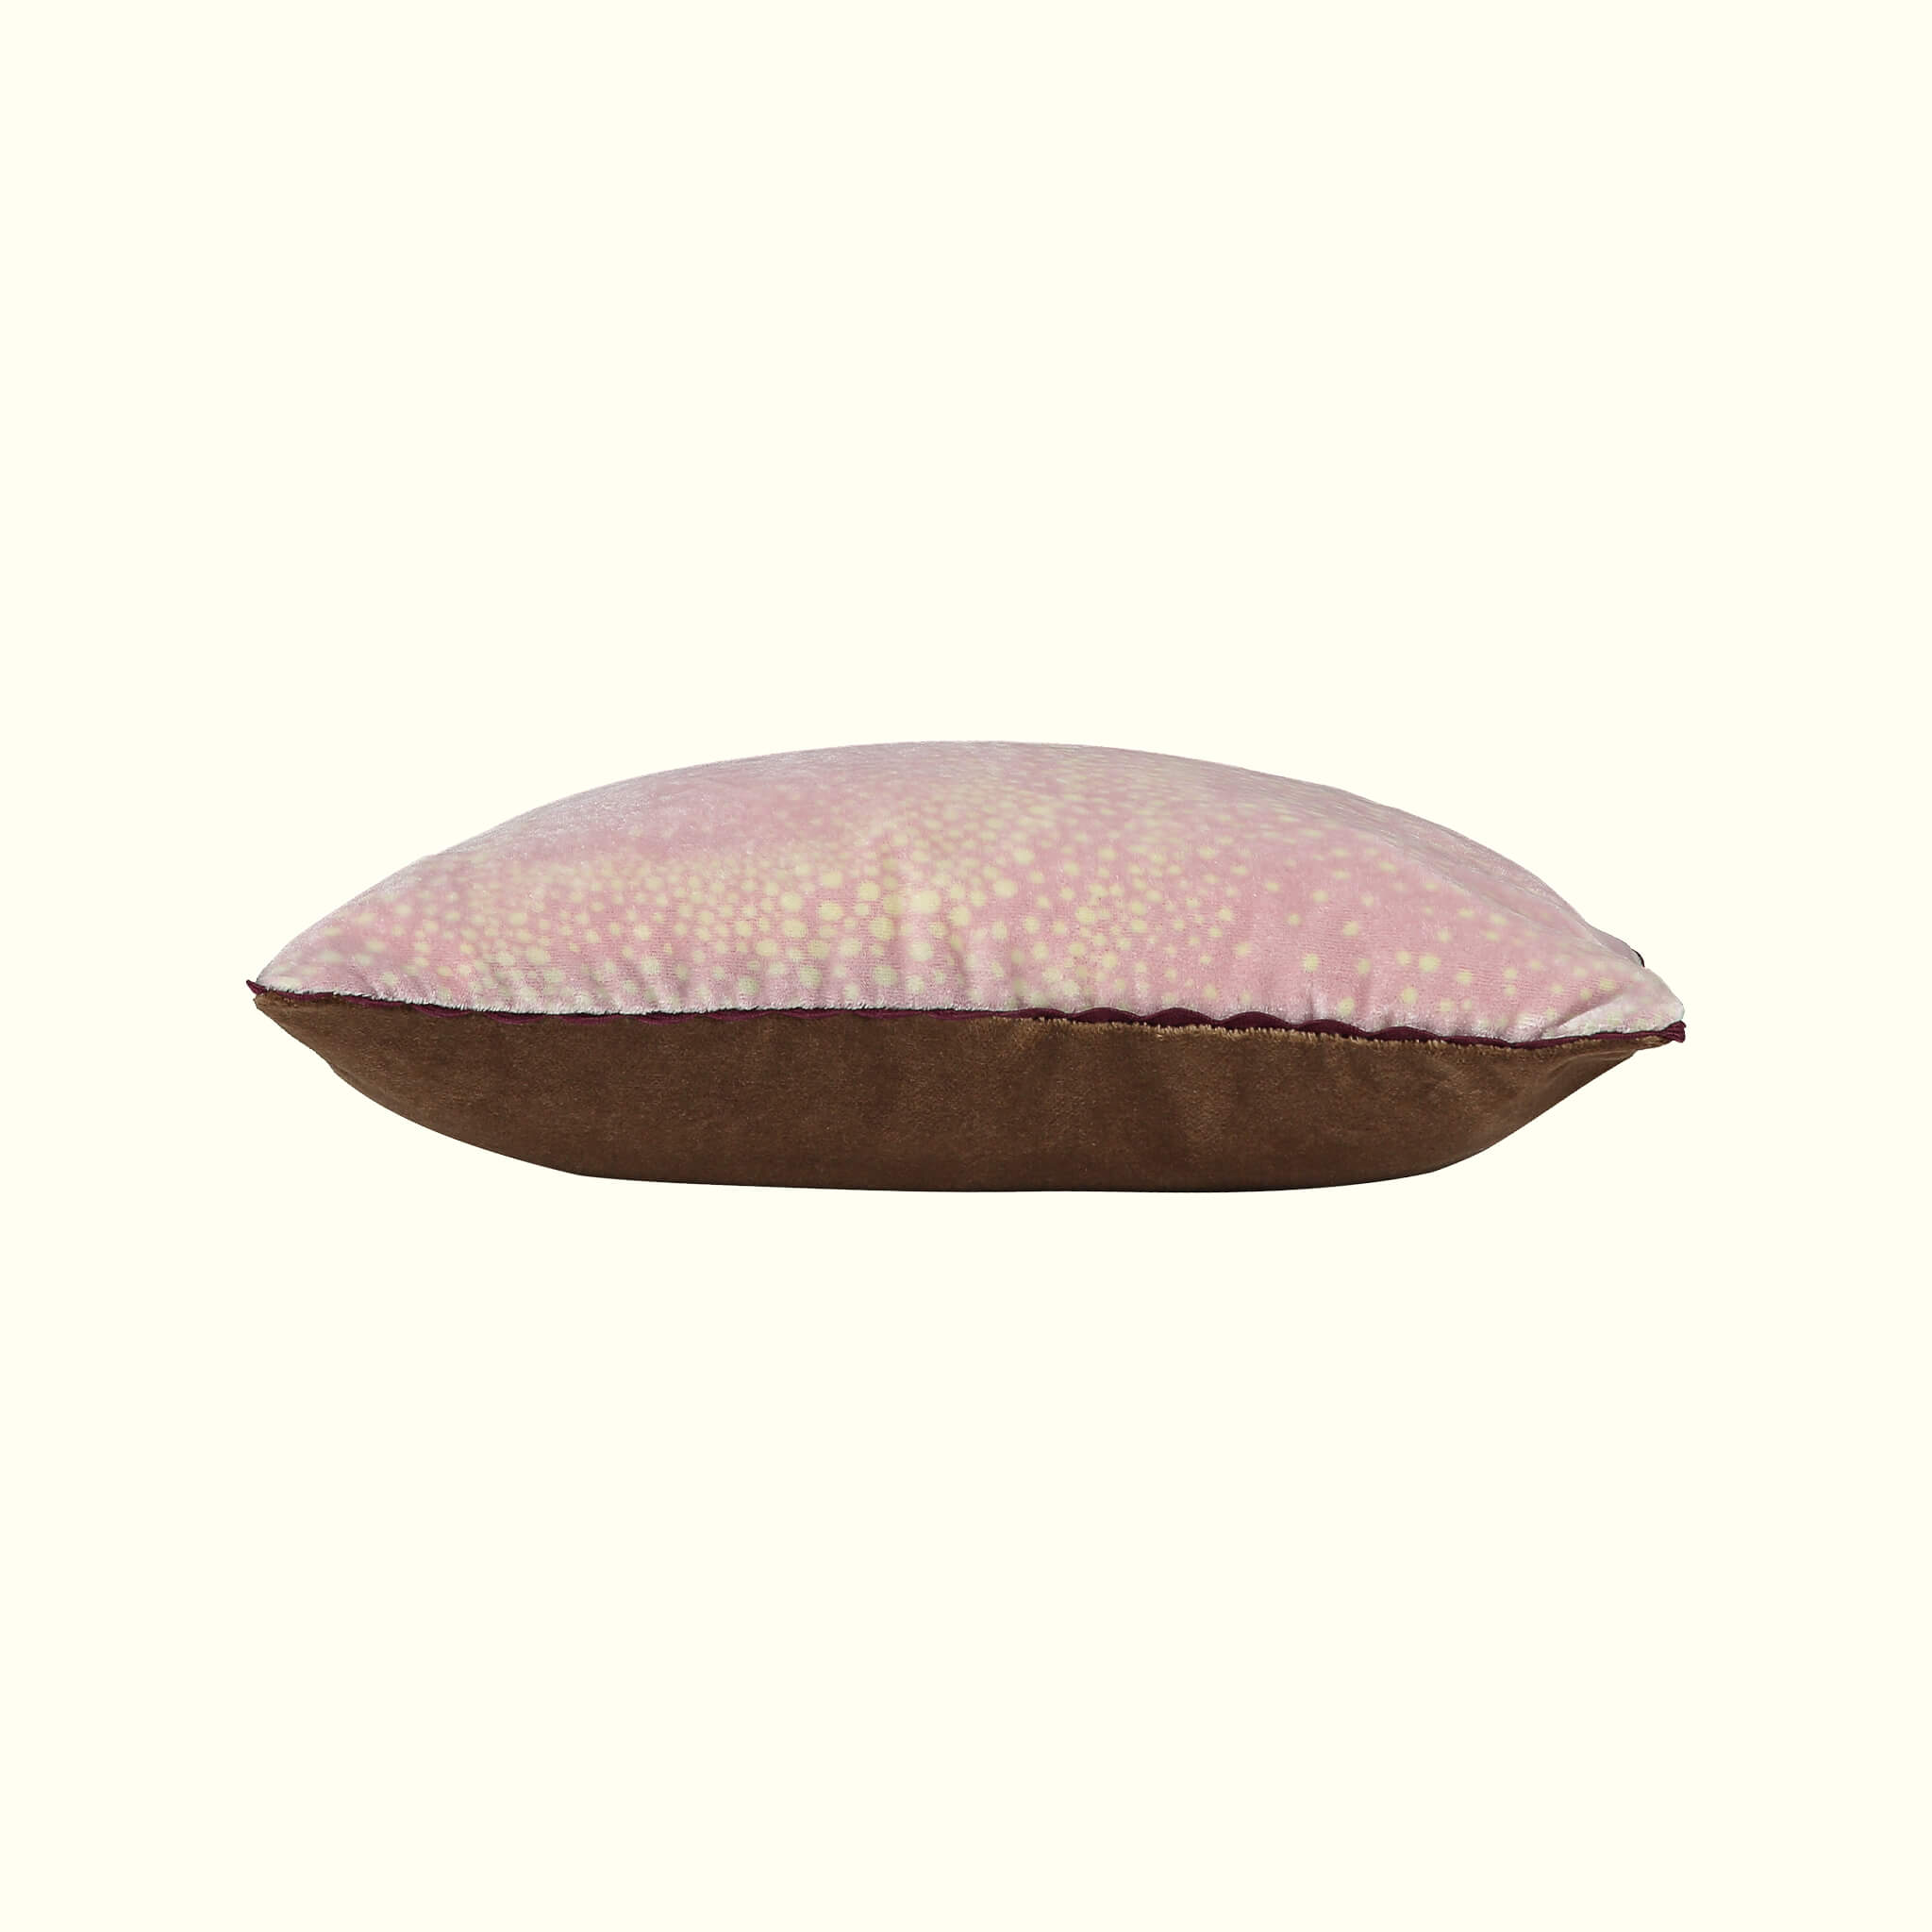 Aurora design dusty pink in silk velvet cotton velvet backed travel cushion sideview by GvE&Co